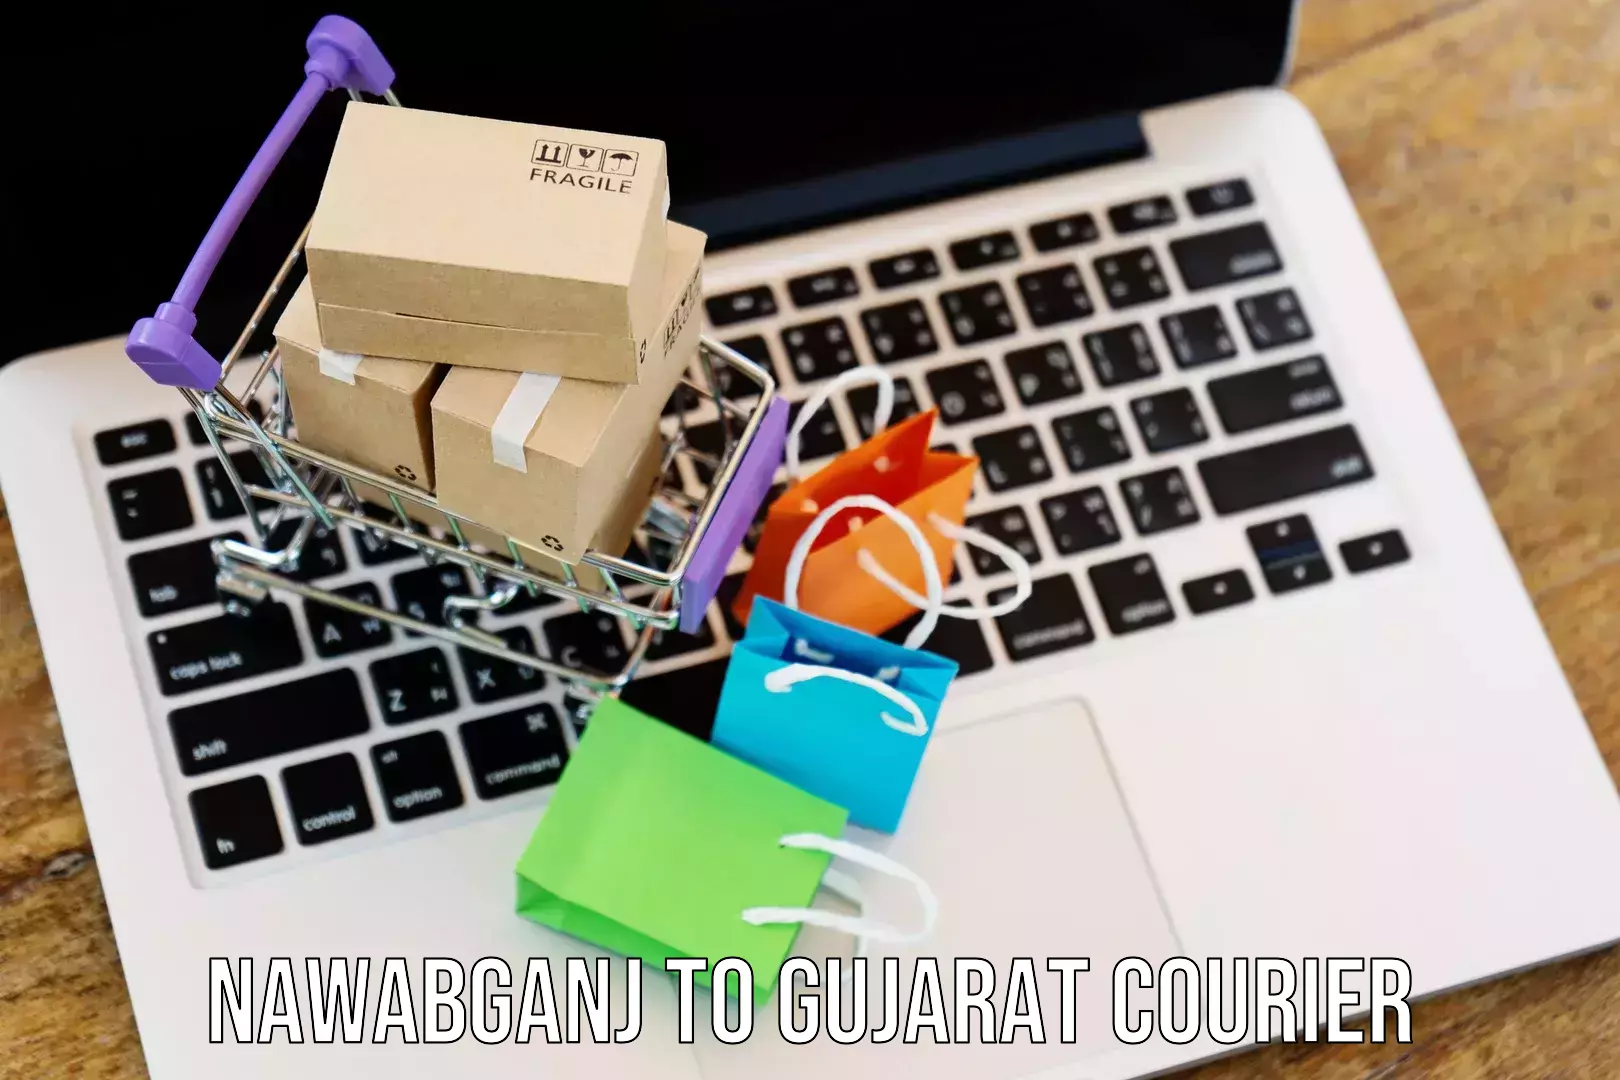 24-hour courier service Nawabganj to Jamnagar